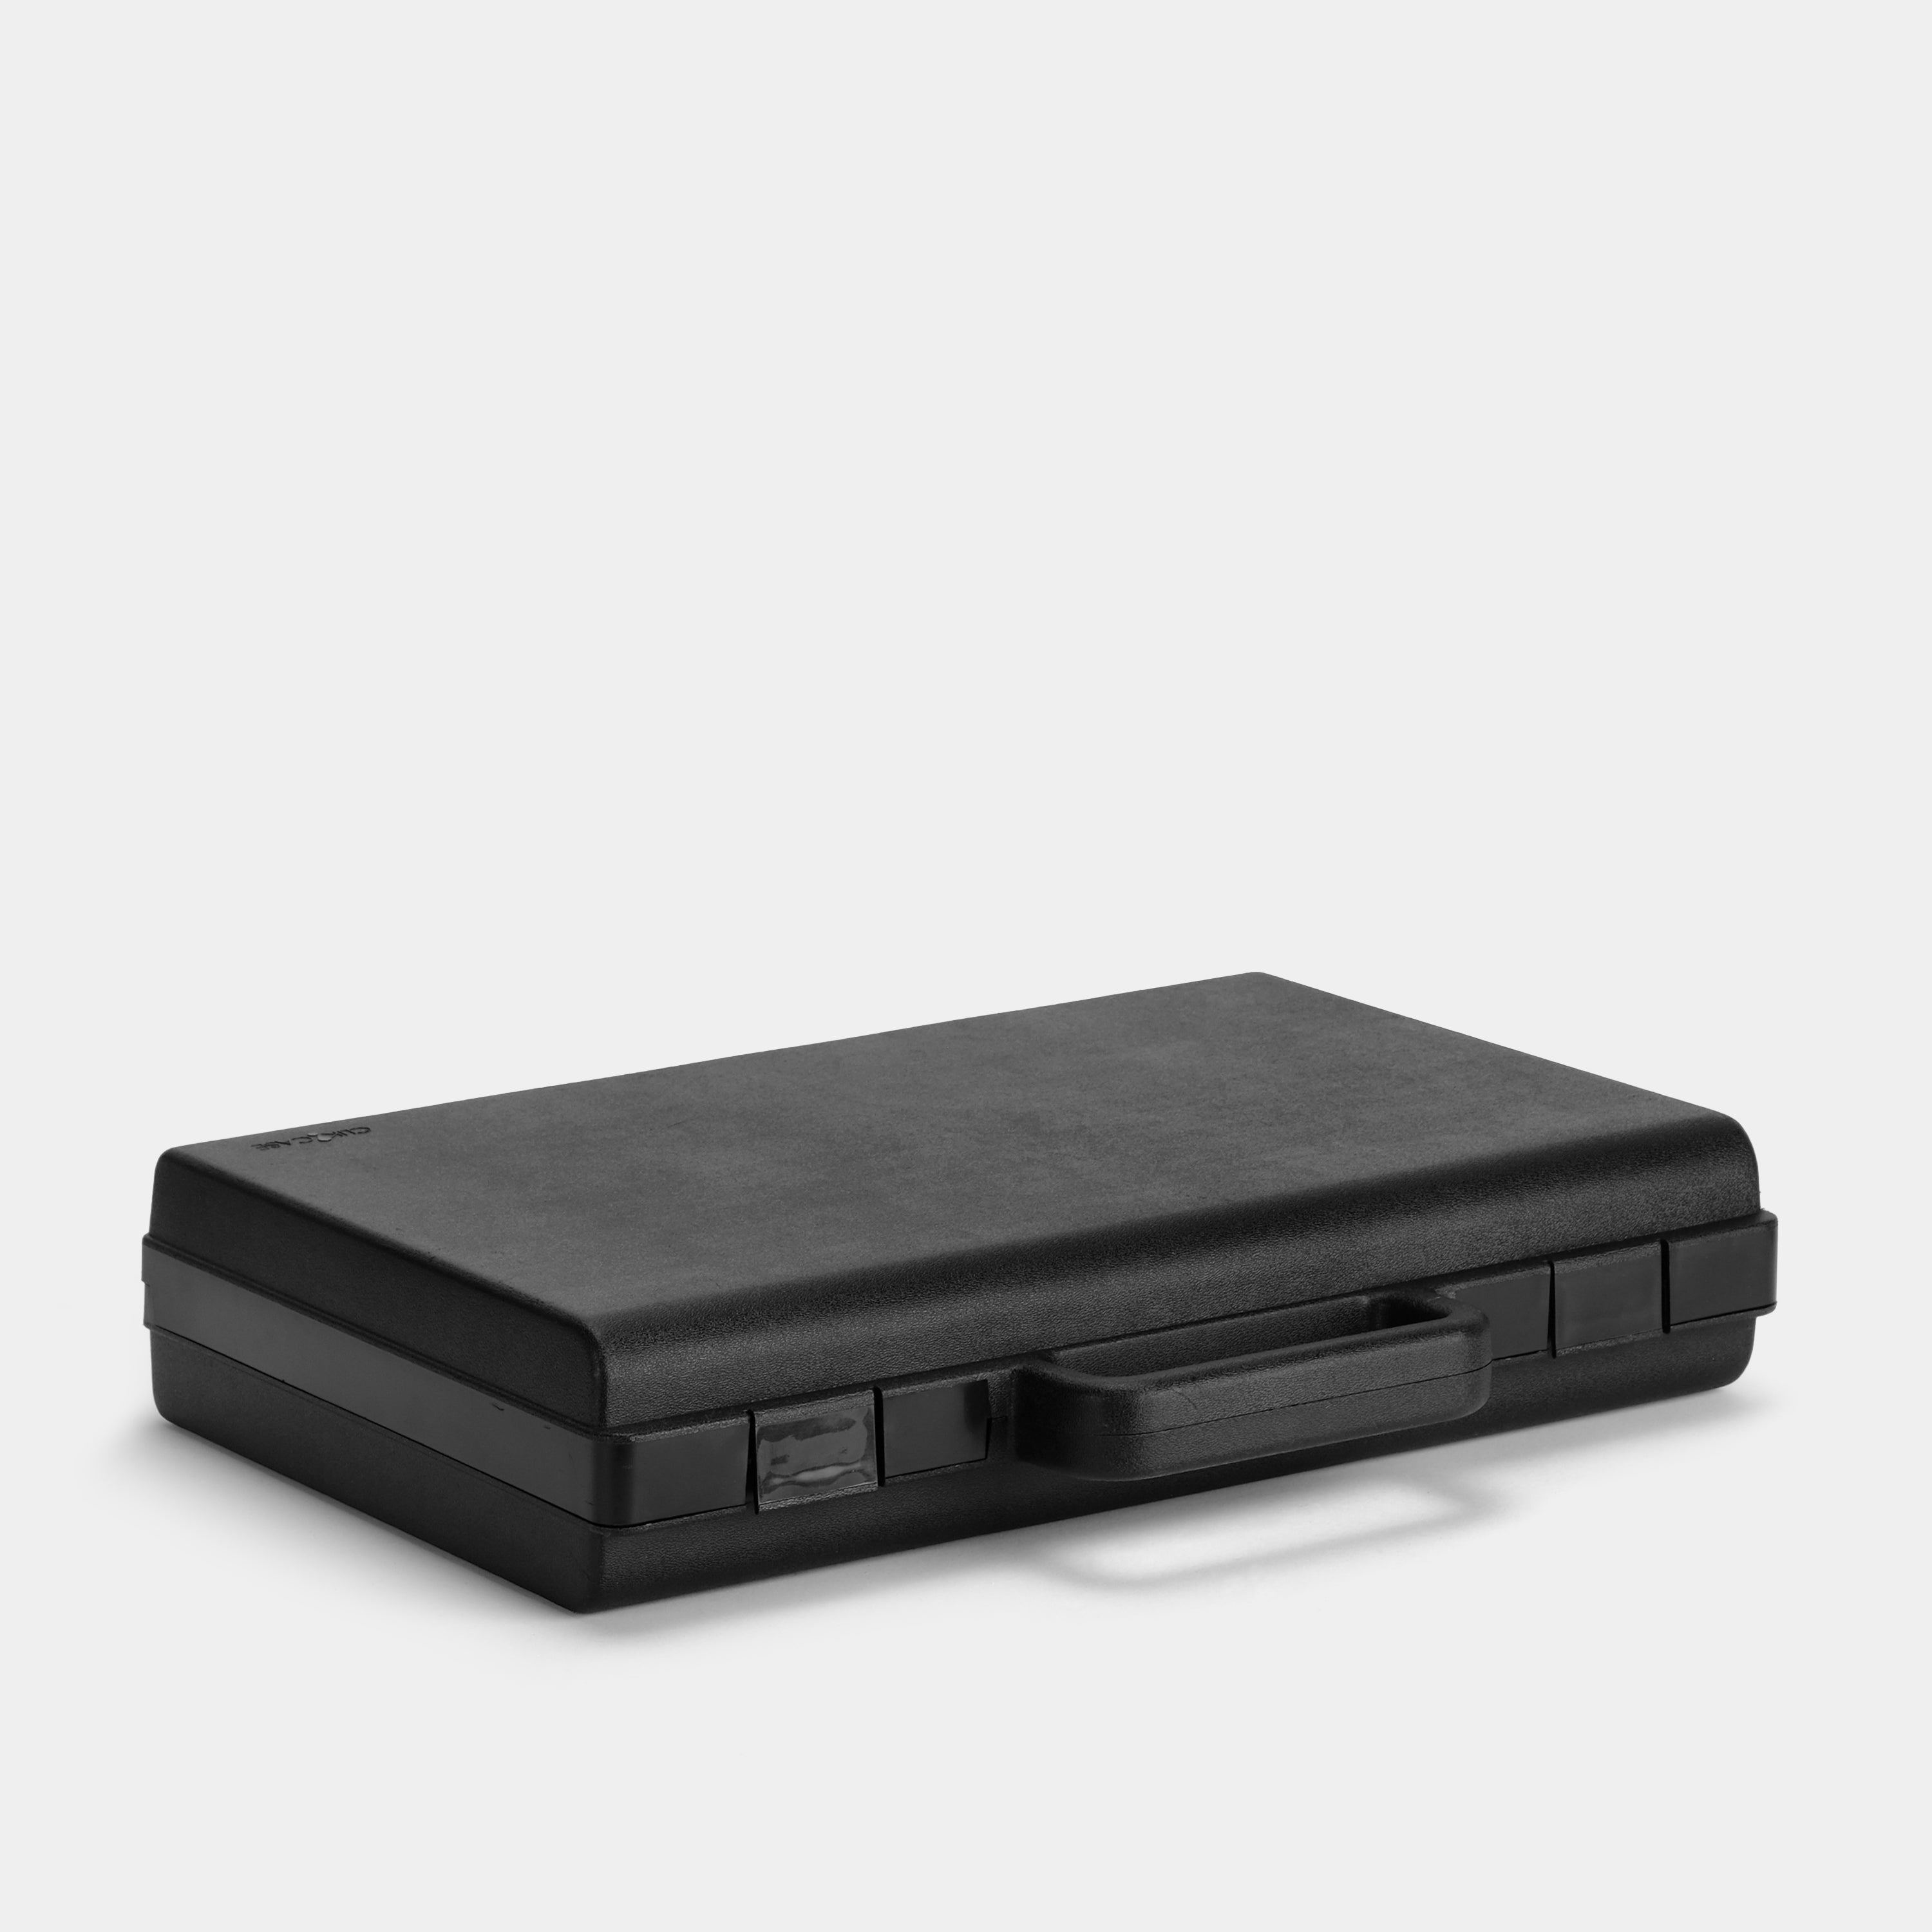 Clik Case Cassette Tape Storage